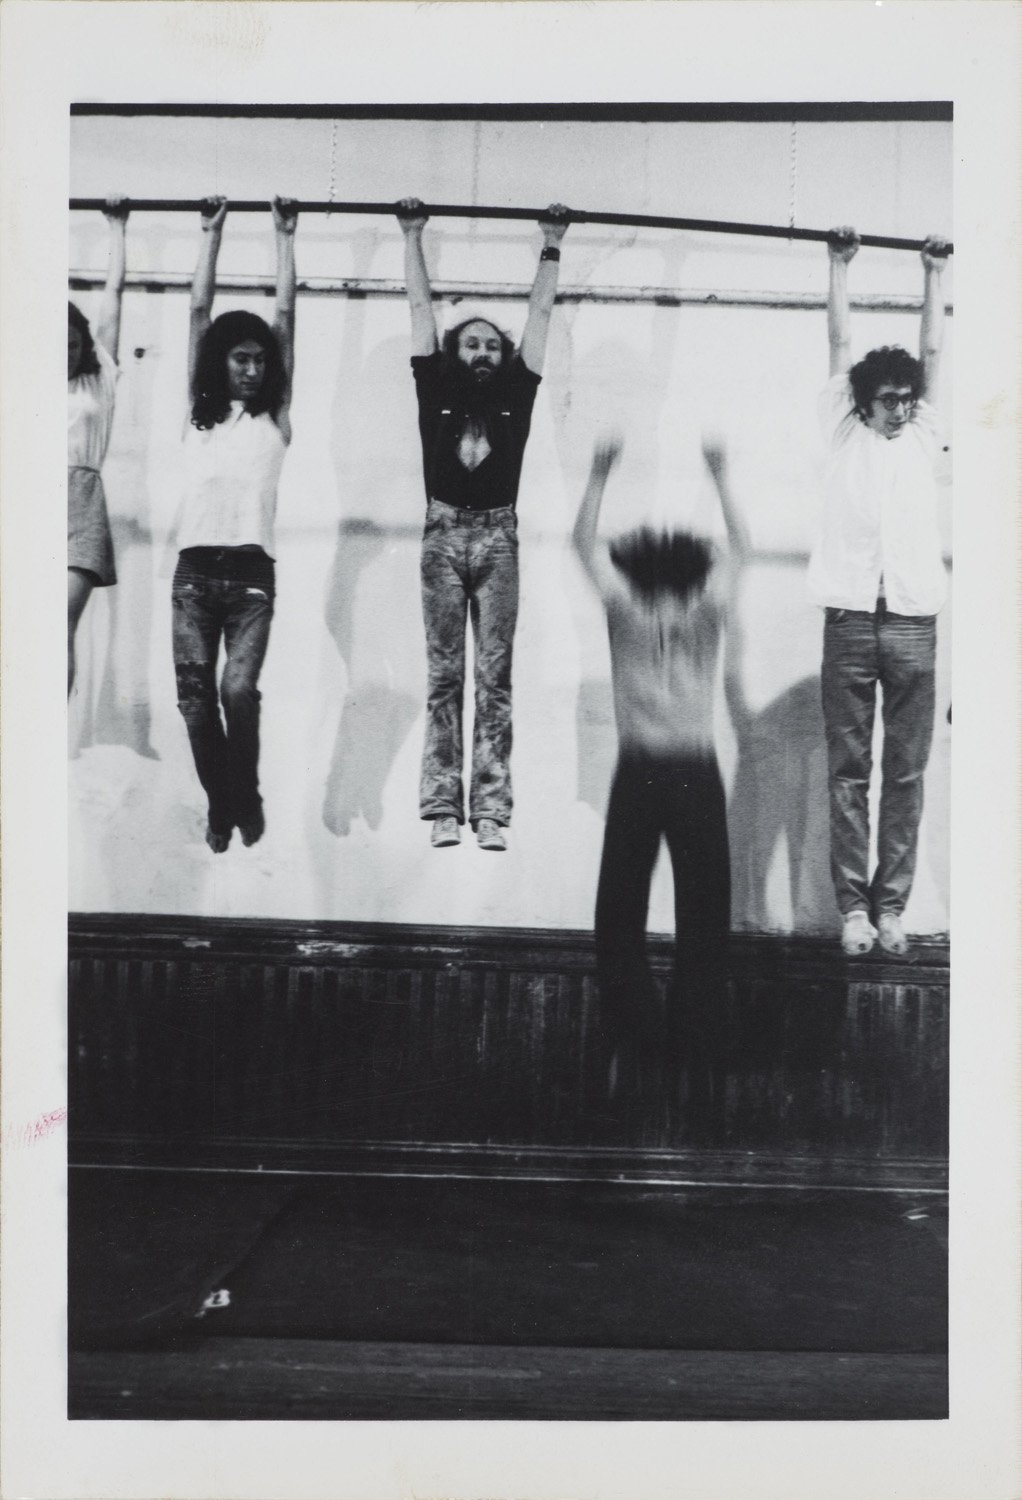 Carol Goodden, Raindrop Dance, 1971, 13 fotografie vintage stampate su carta ai sali d’argento della performance di Carol Goodden presentata il 29 giugno 1971 presso il 112 Greene Street, N.Y.C. Fotografo sconosciuto